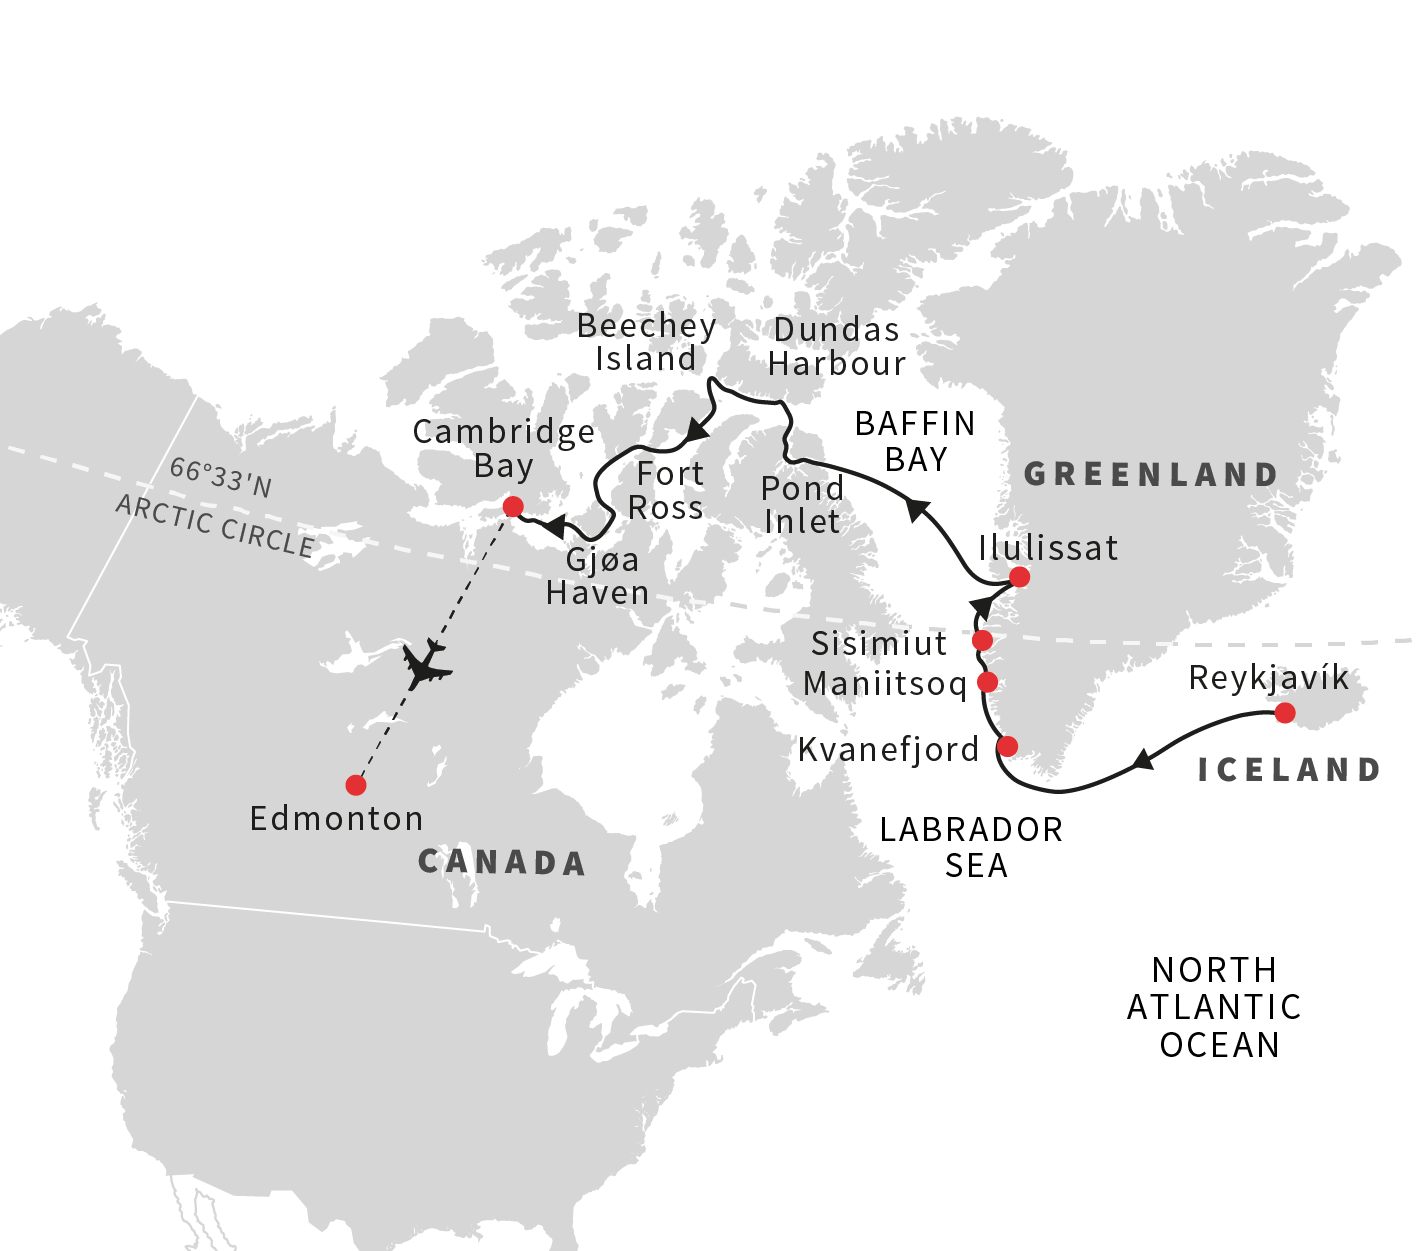 Northwest Passage Cruises Hurtigruten UK